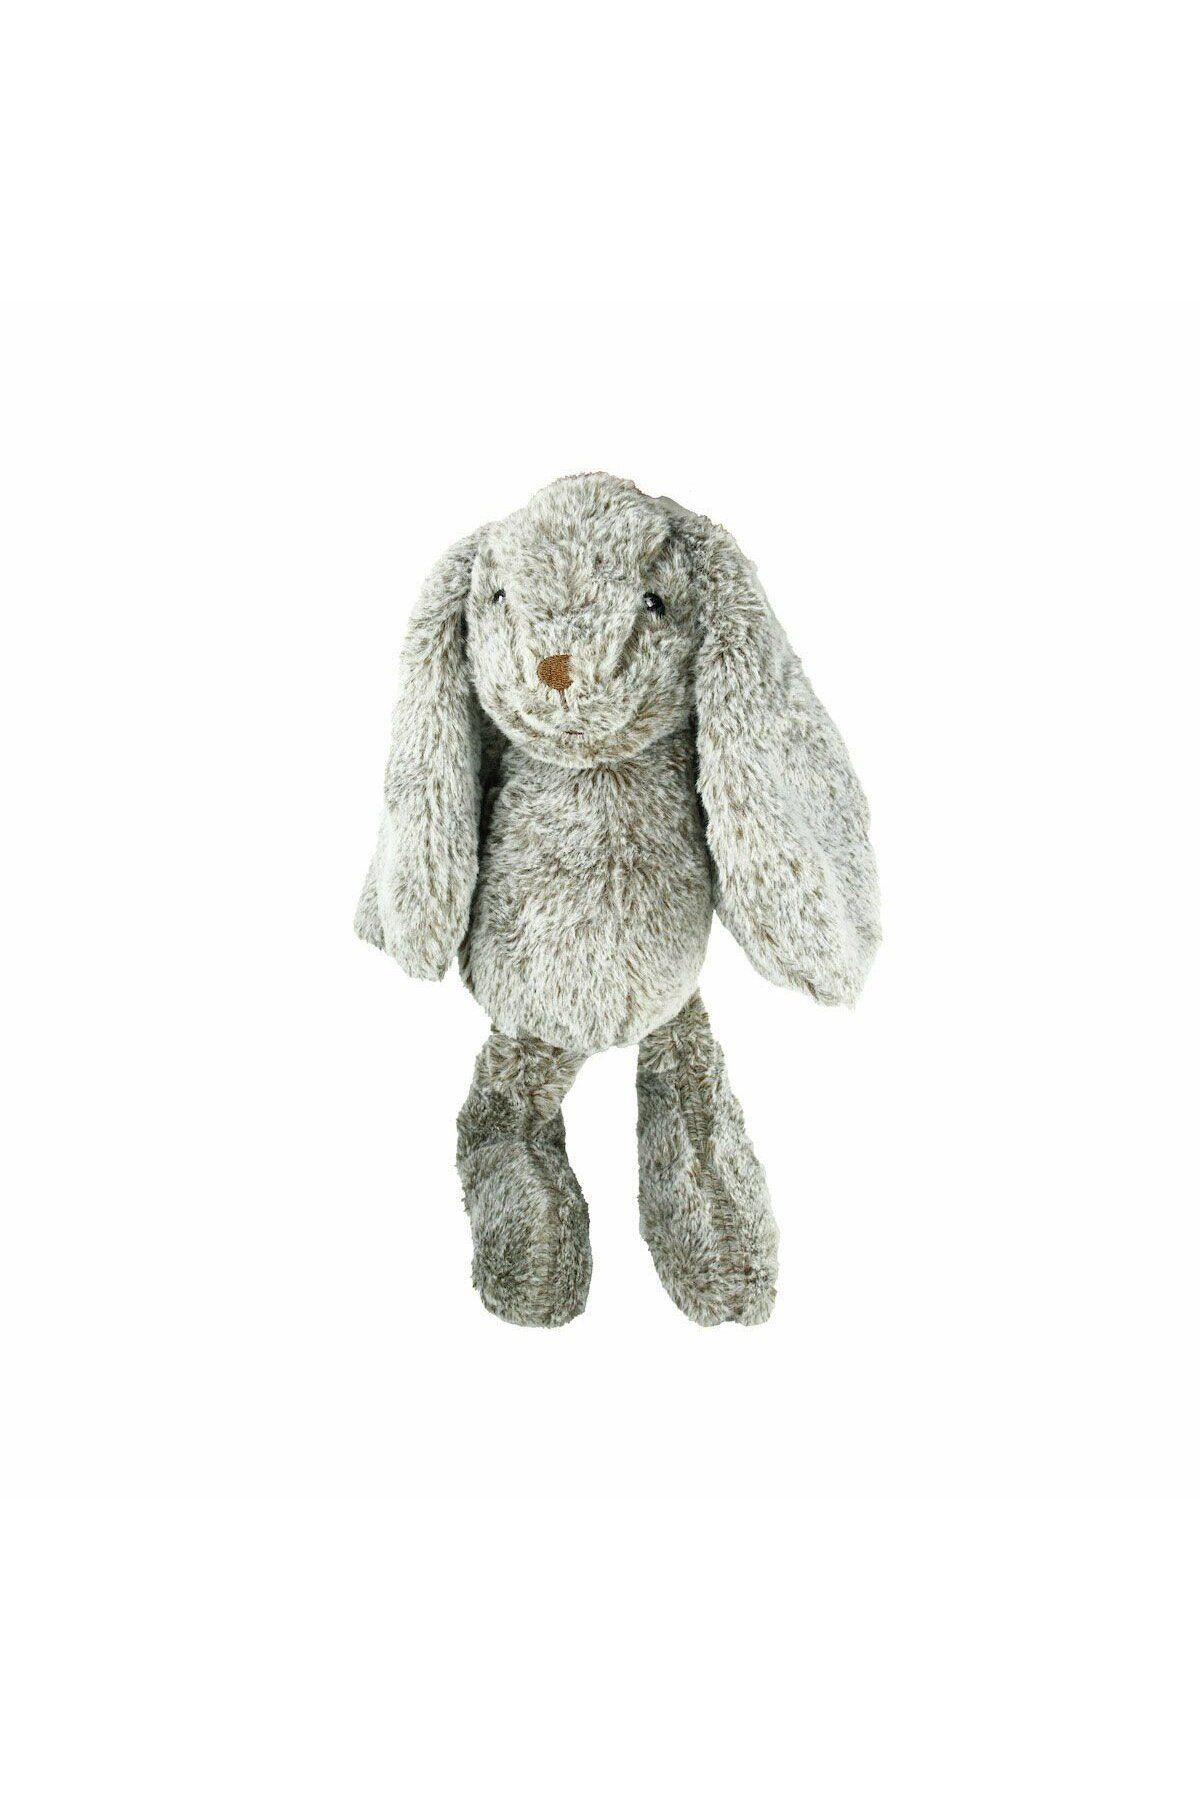 Vardem PB31173-24 Peluş Tavşan 23 cm -Tavşan